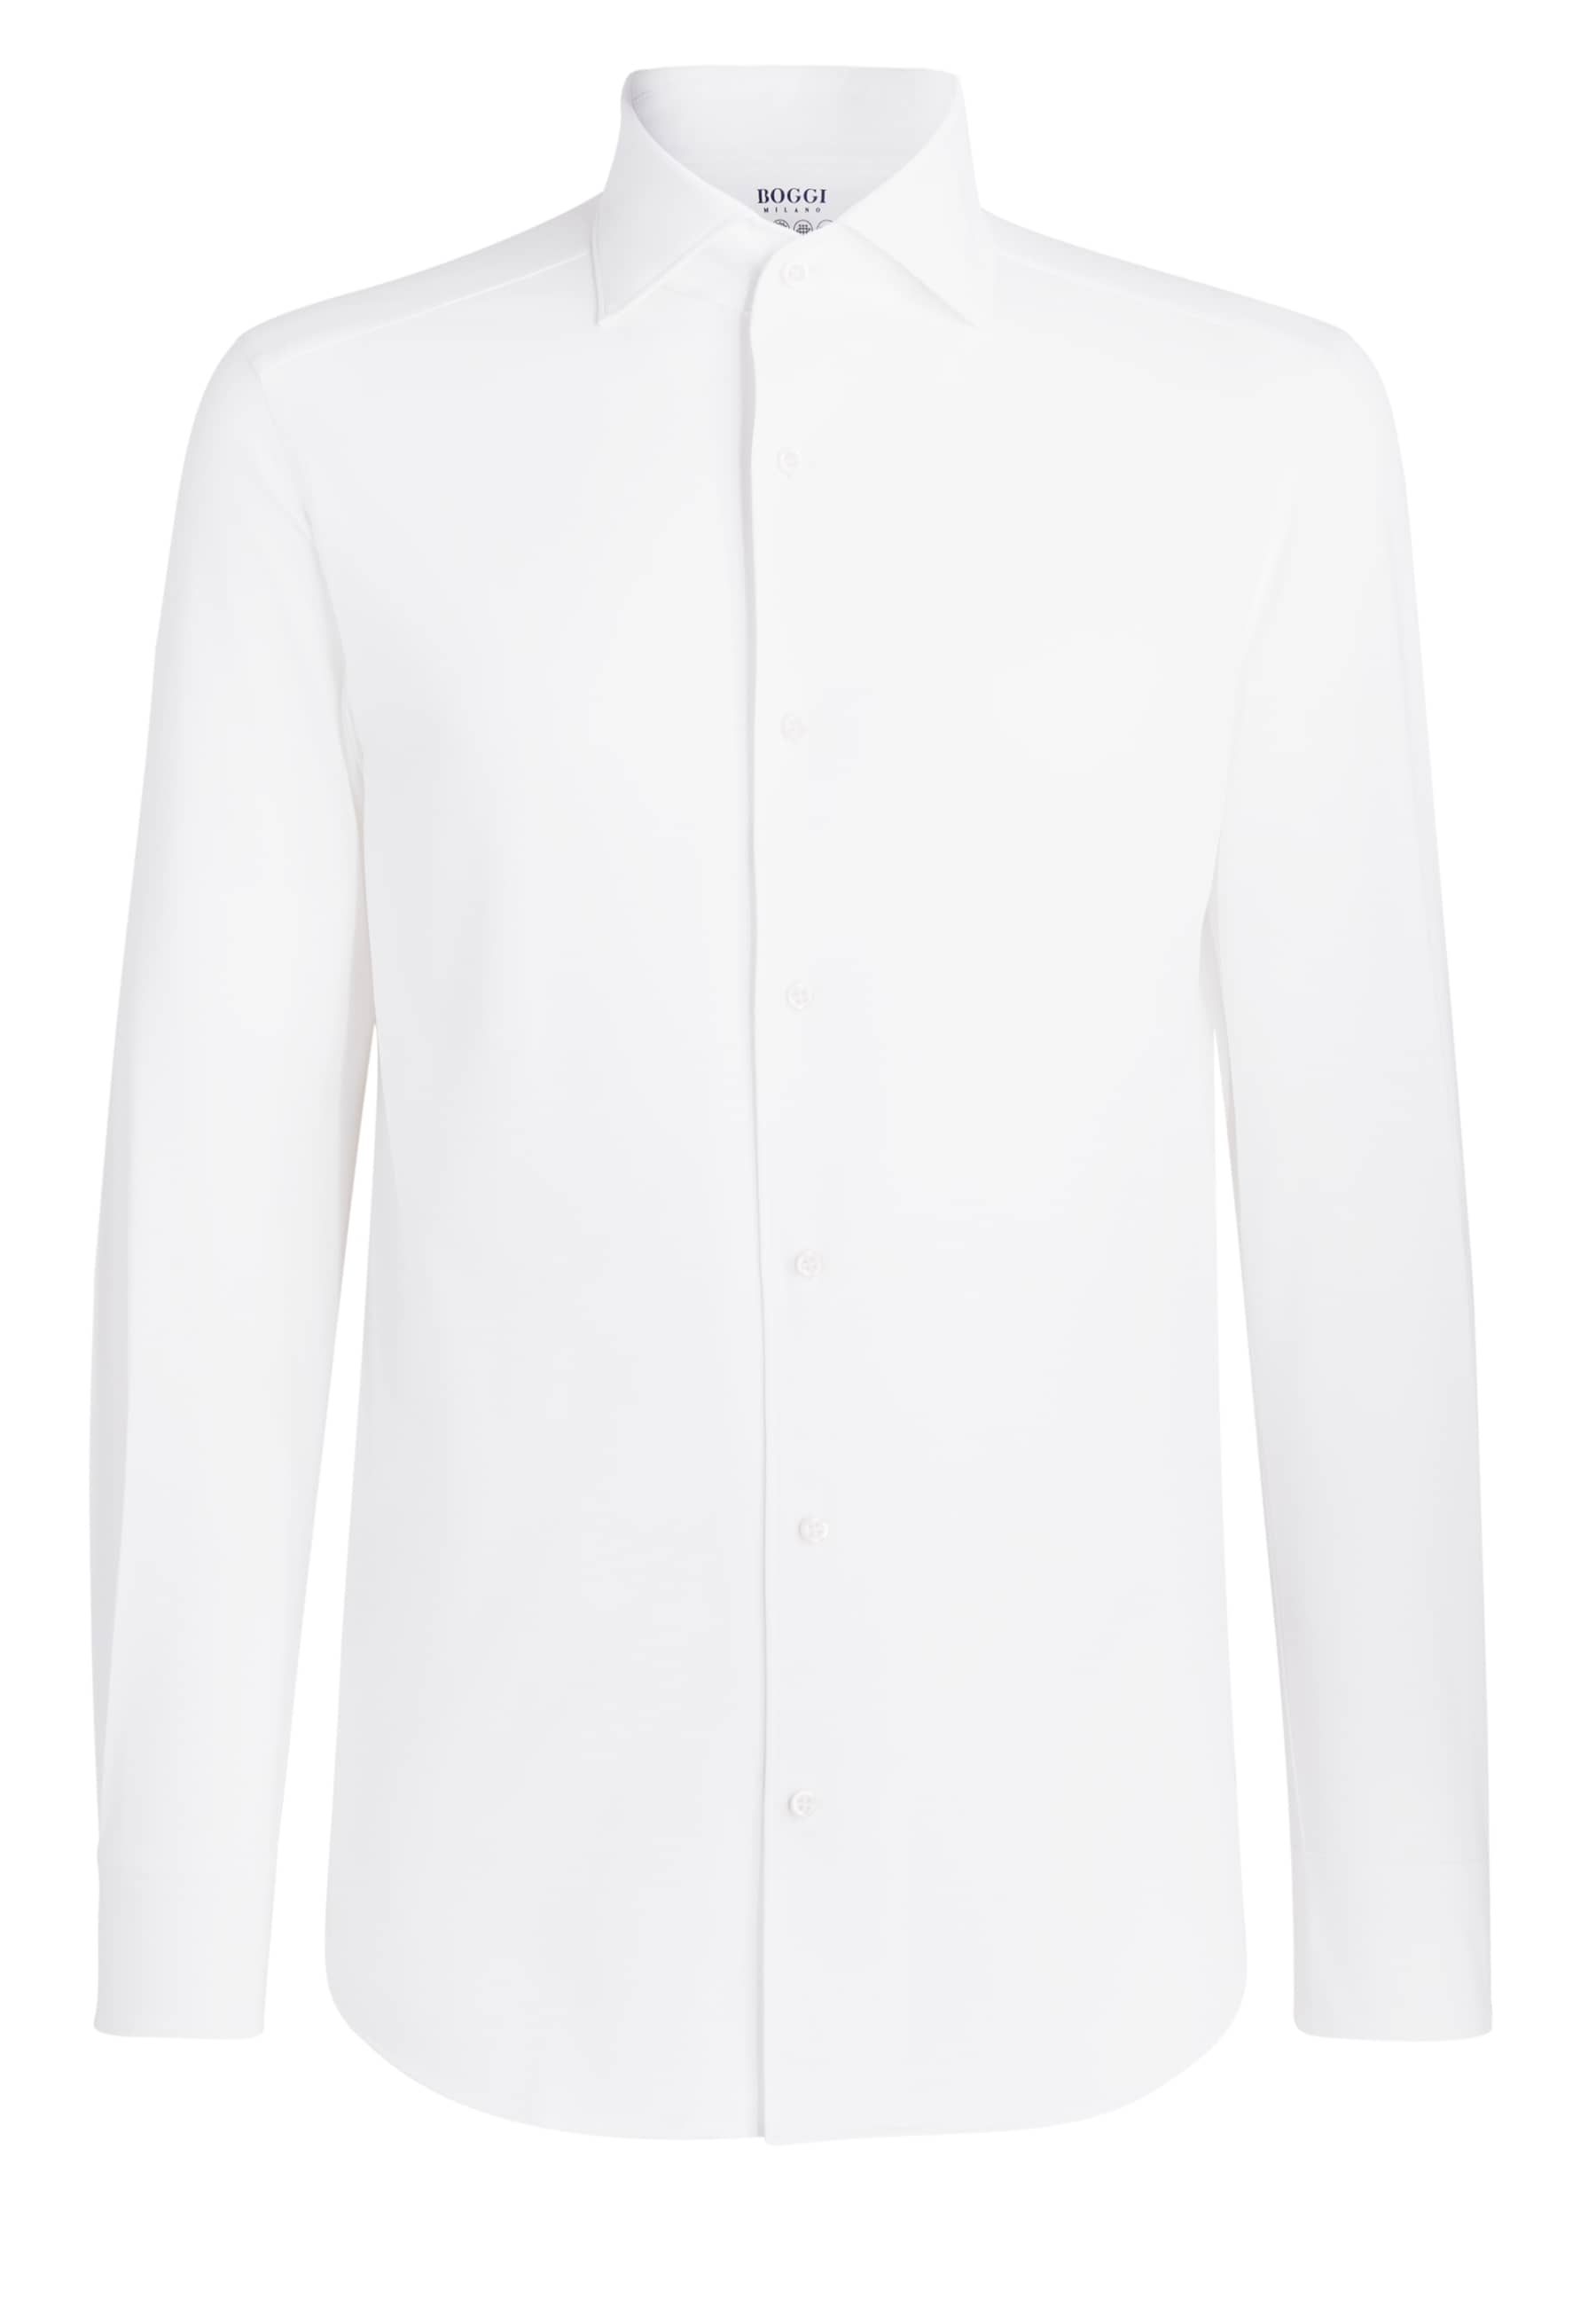 ROOaM Plus size Boggi Milano Koszula w kolorze Białym 